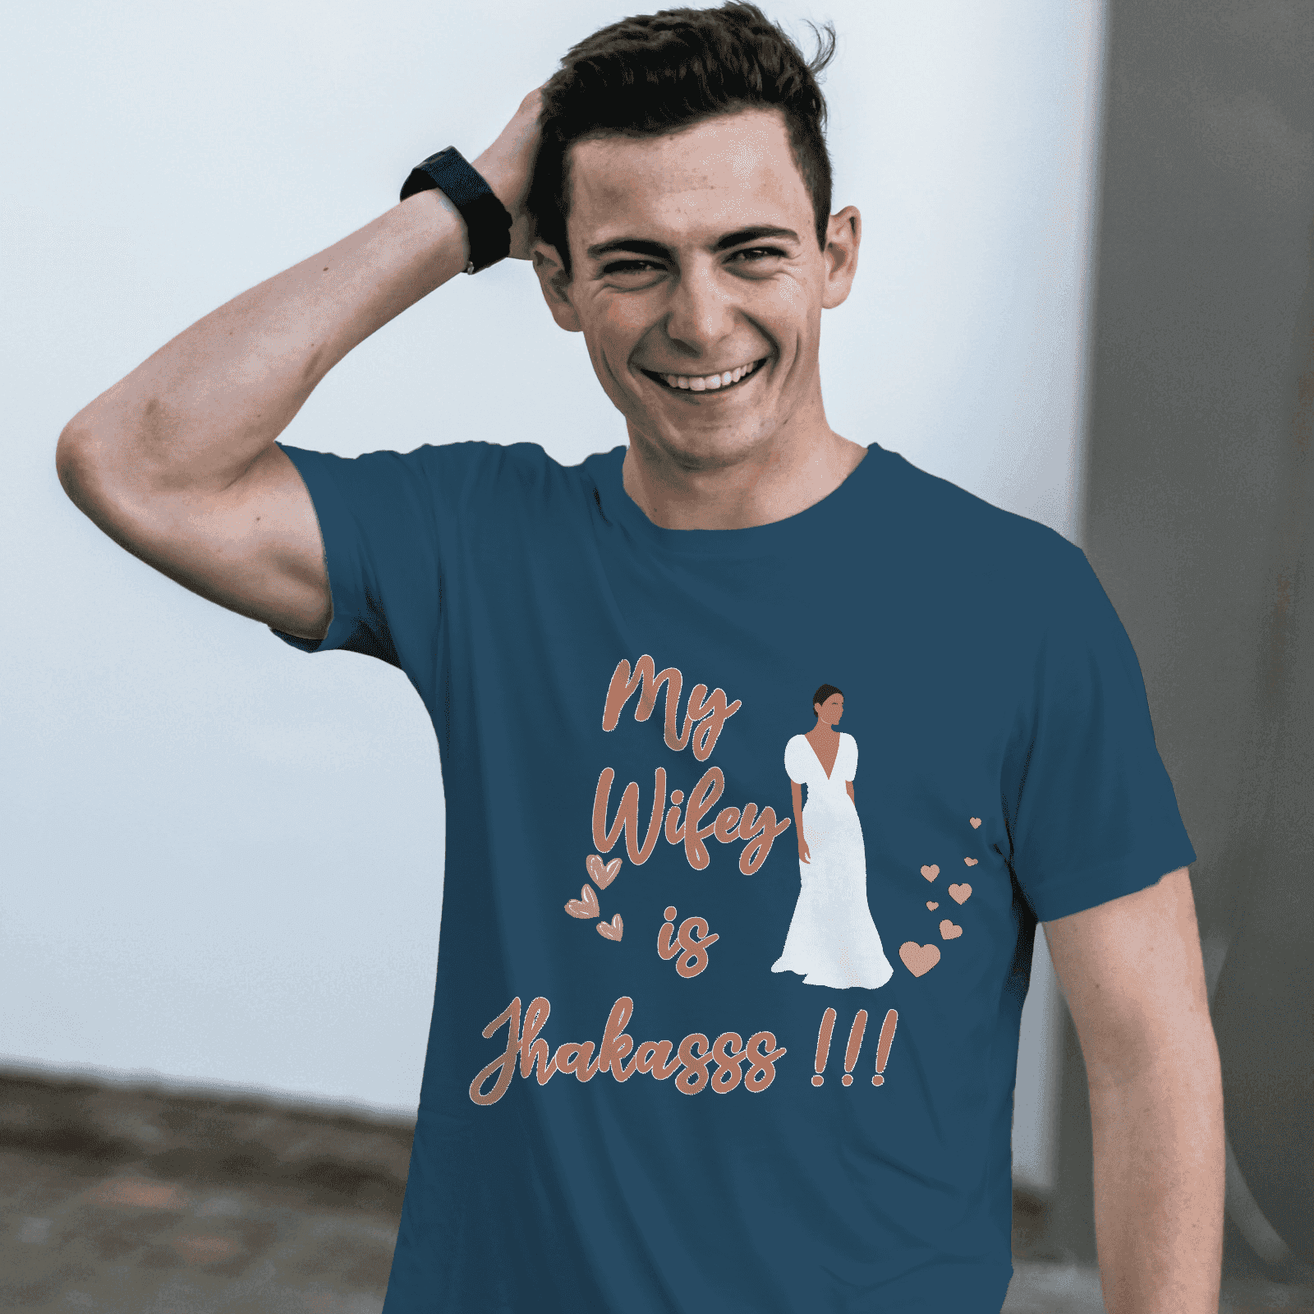 My Wifey is Jhakkass! Men's Graphic T-Shirt